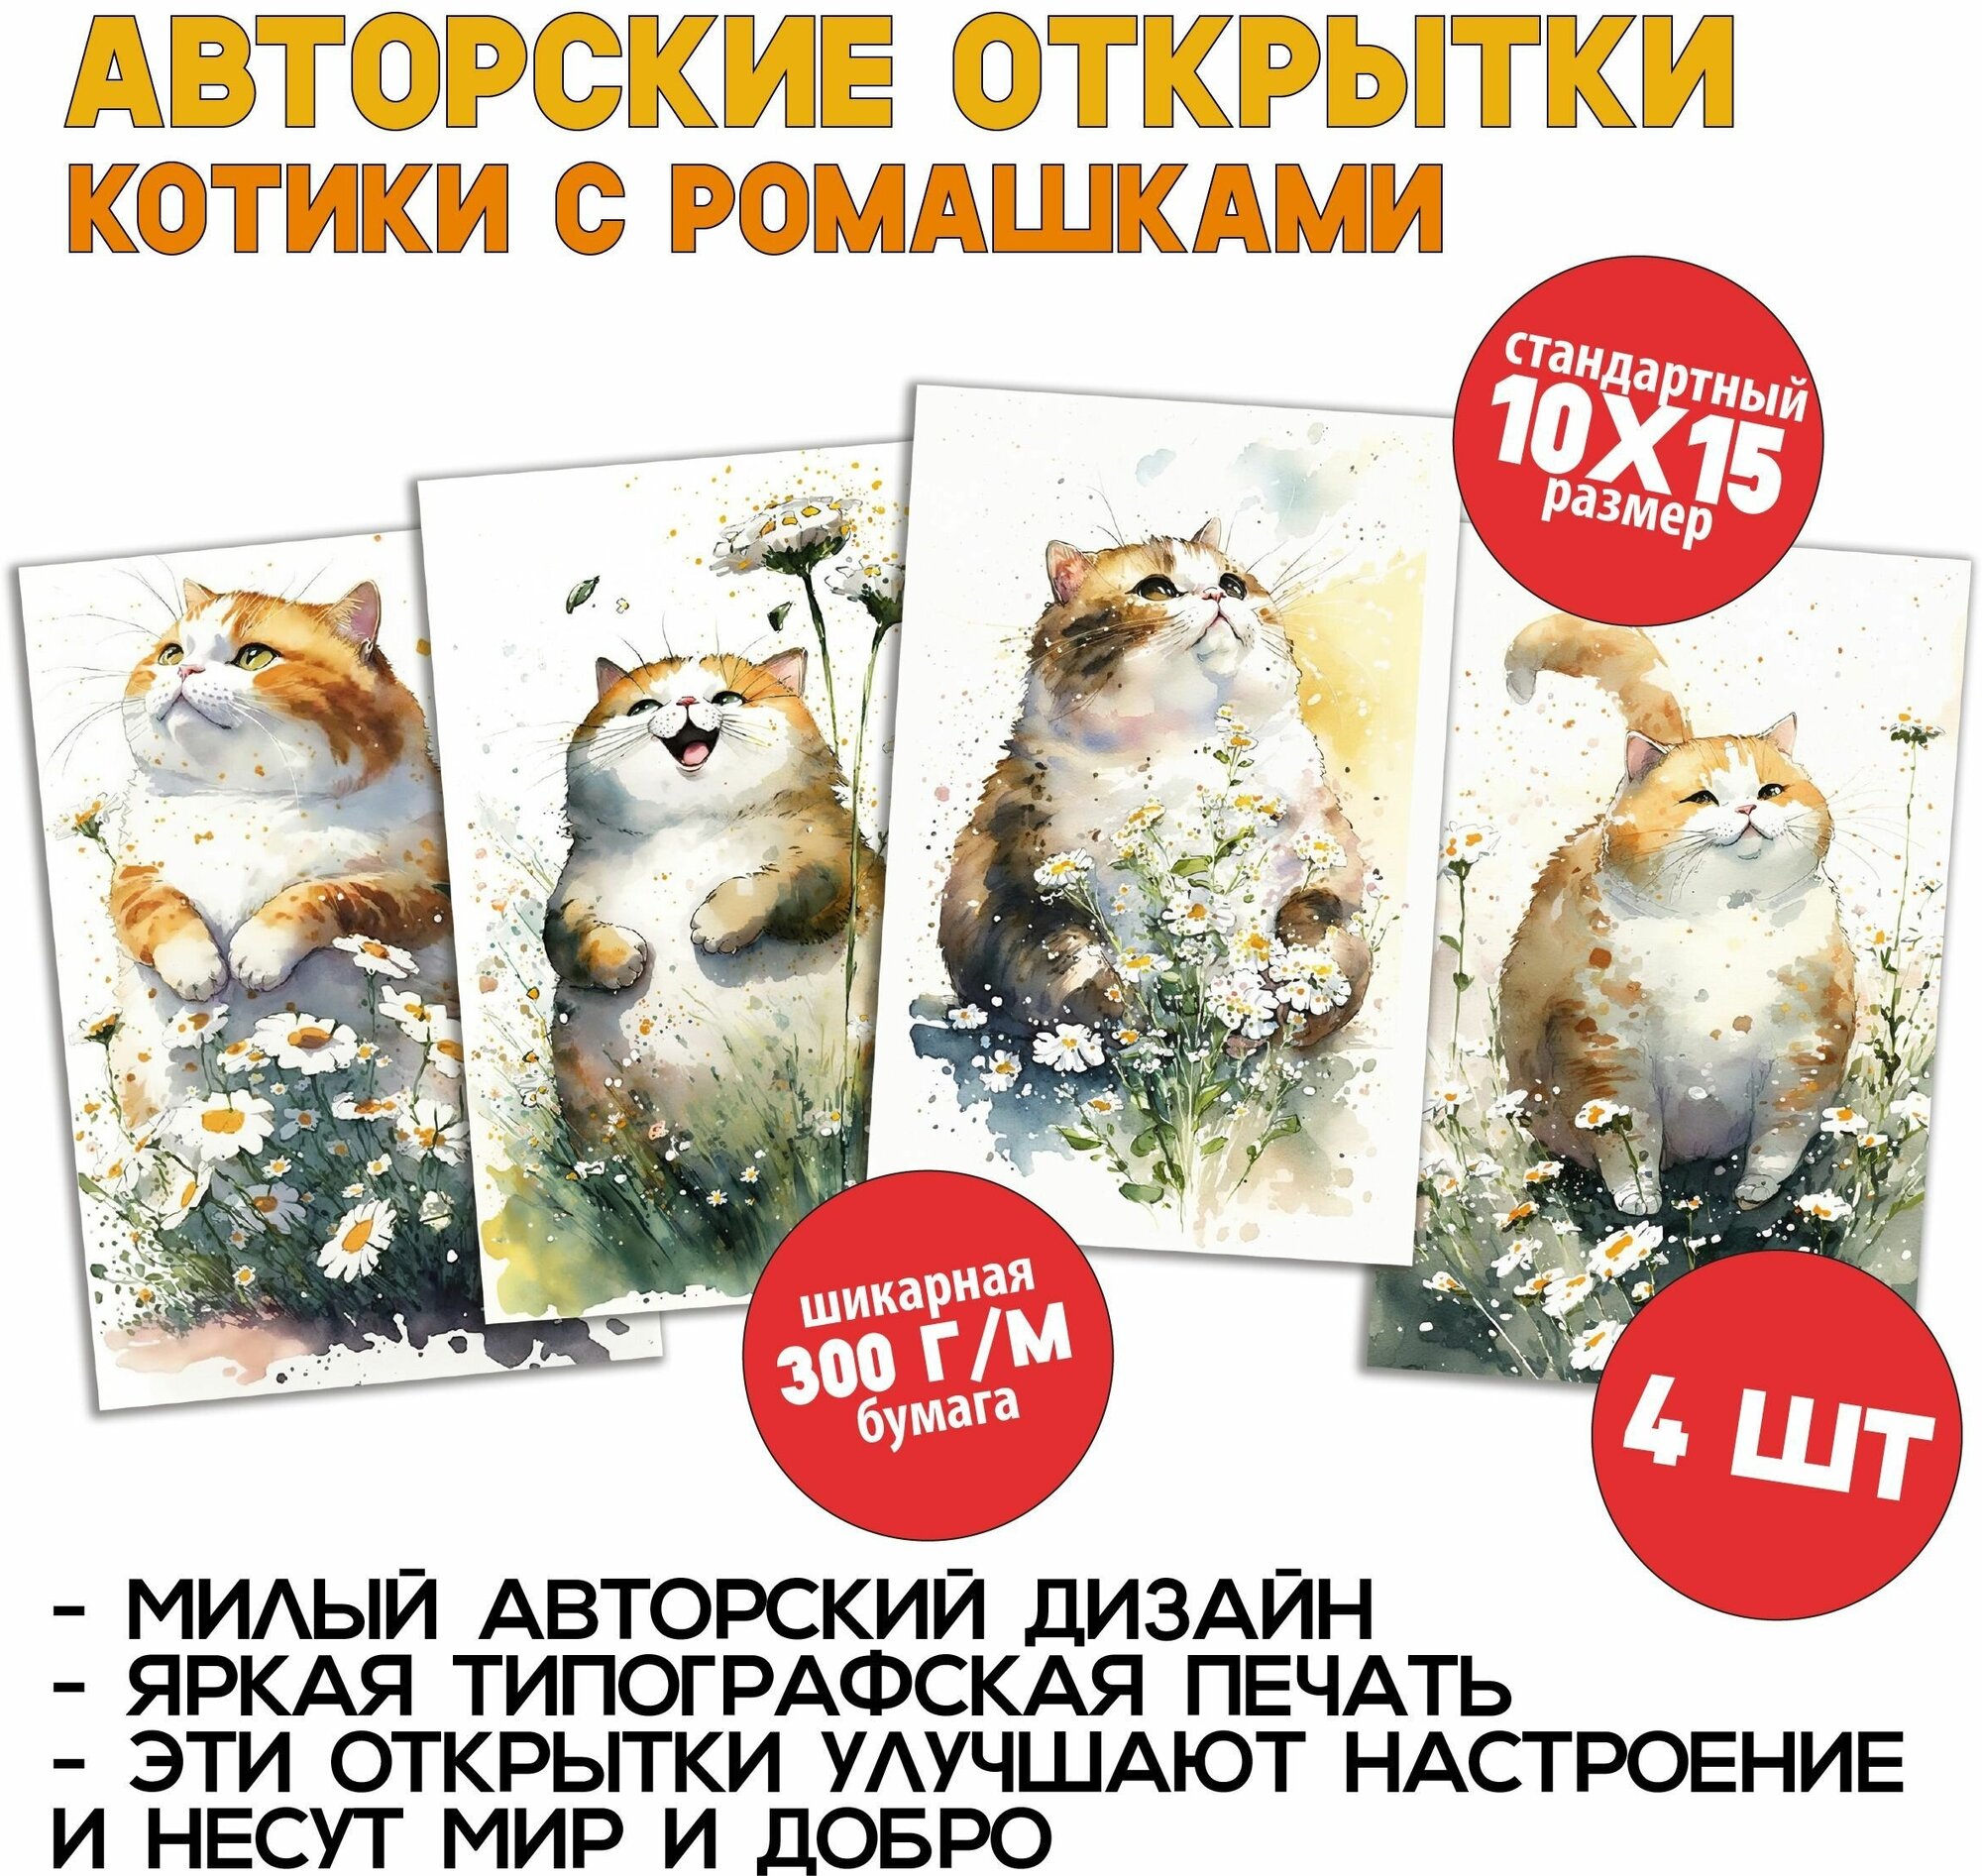 Котики и ромашки: 4 открытки для романтического поздравления или для посткроссинга